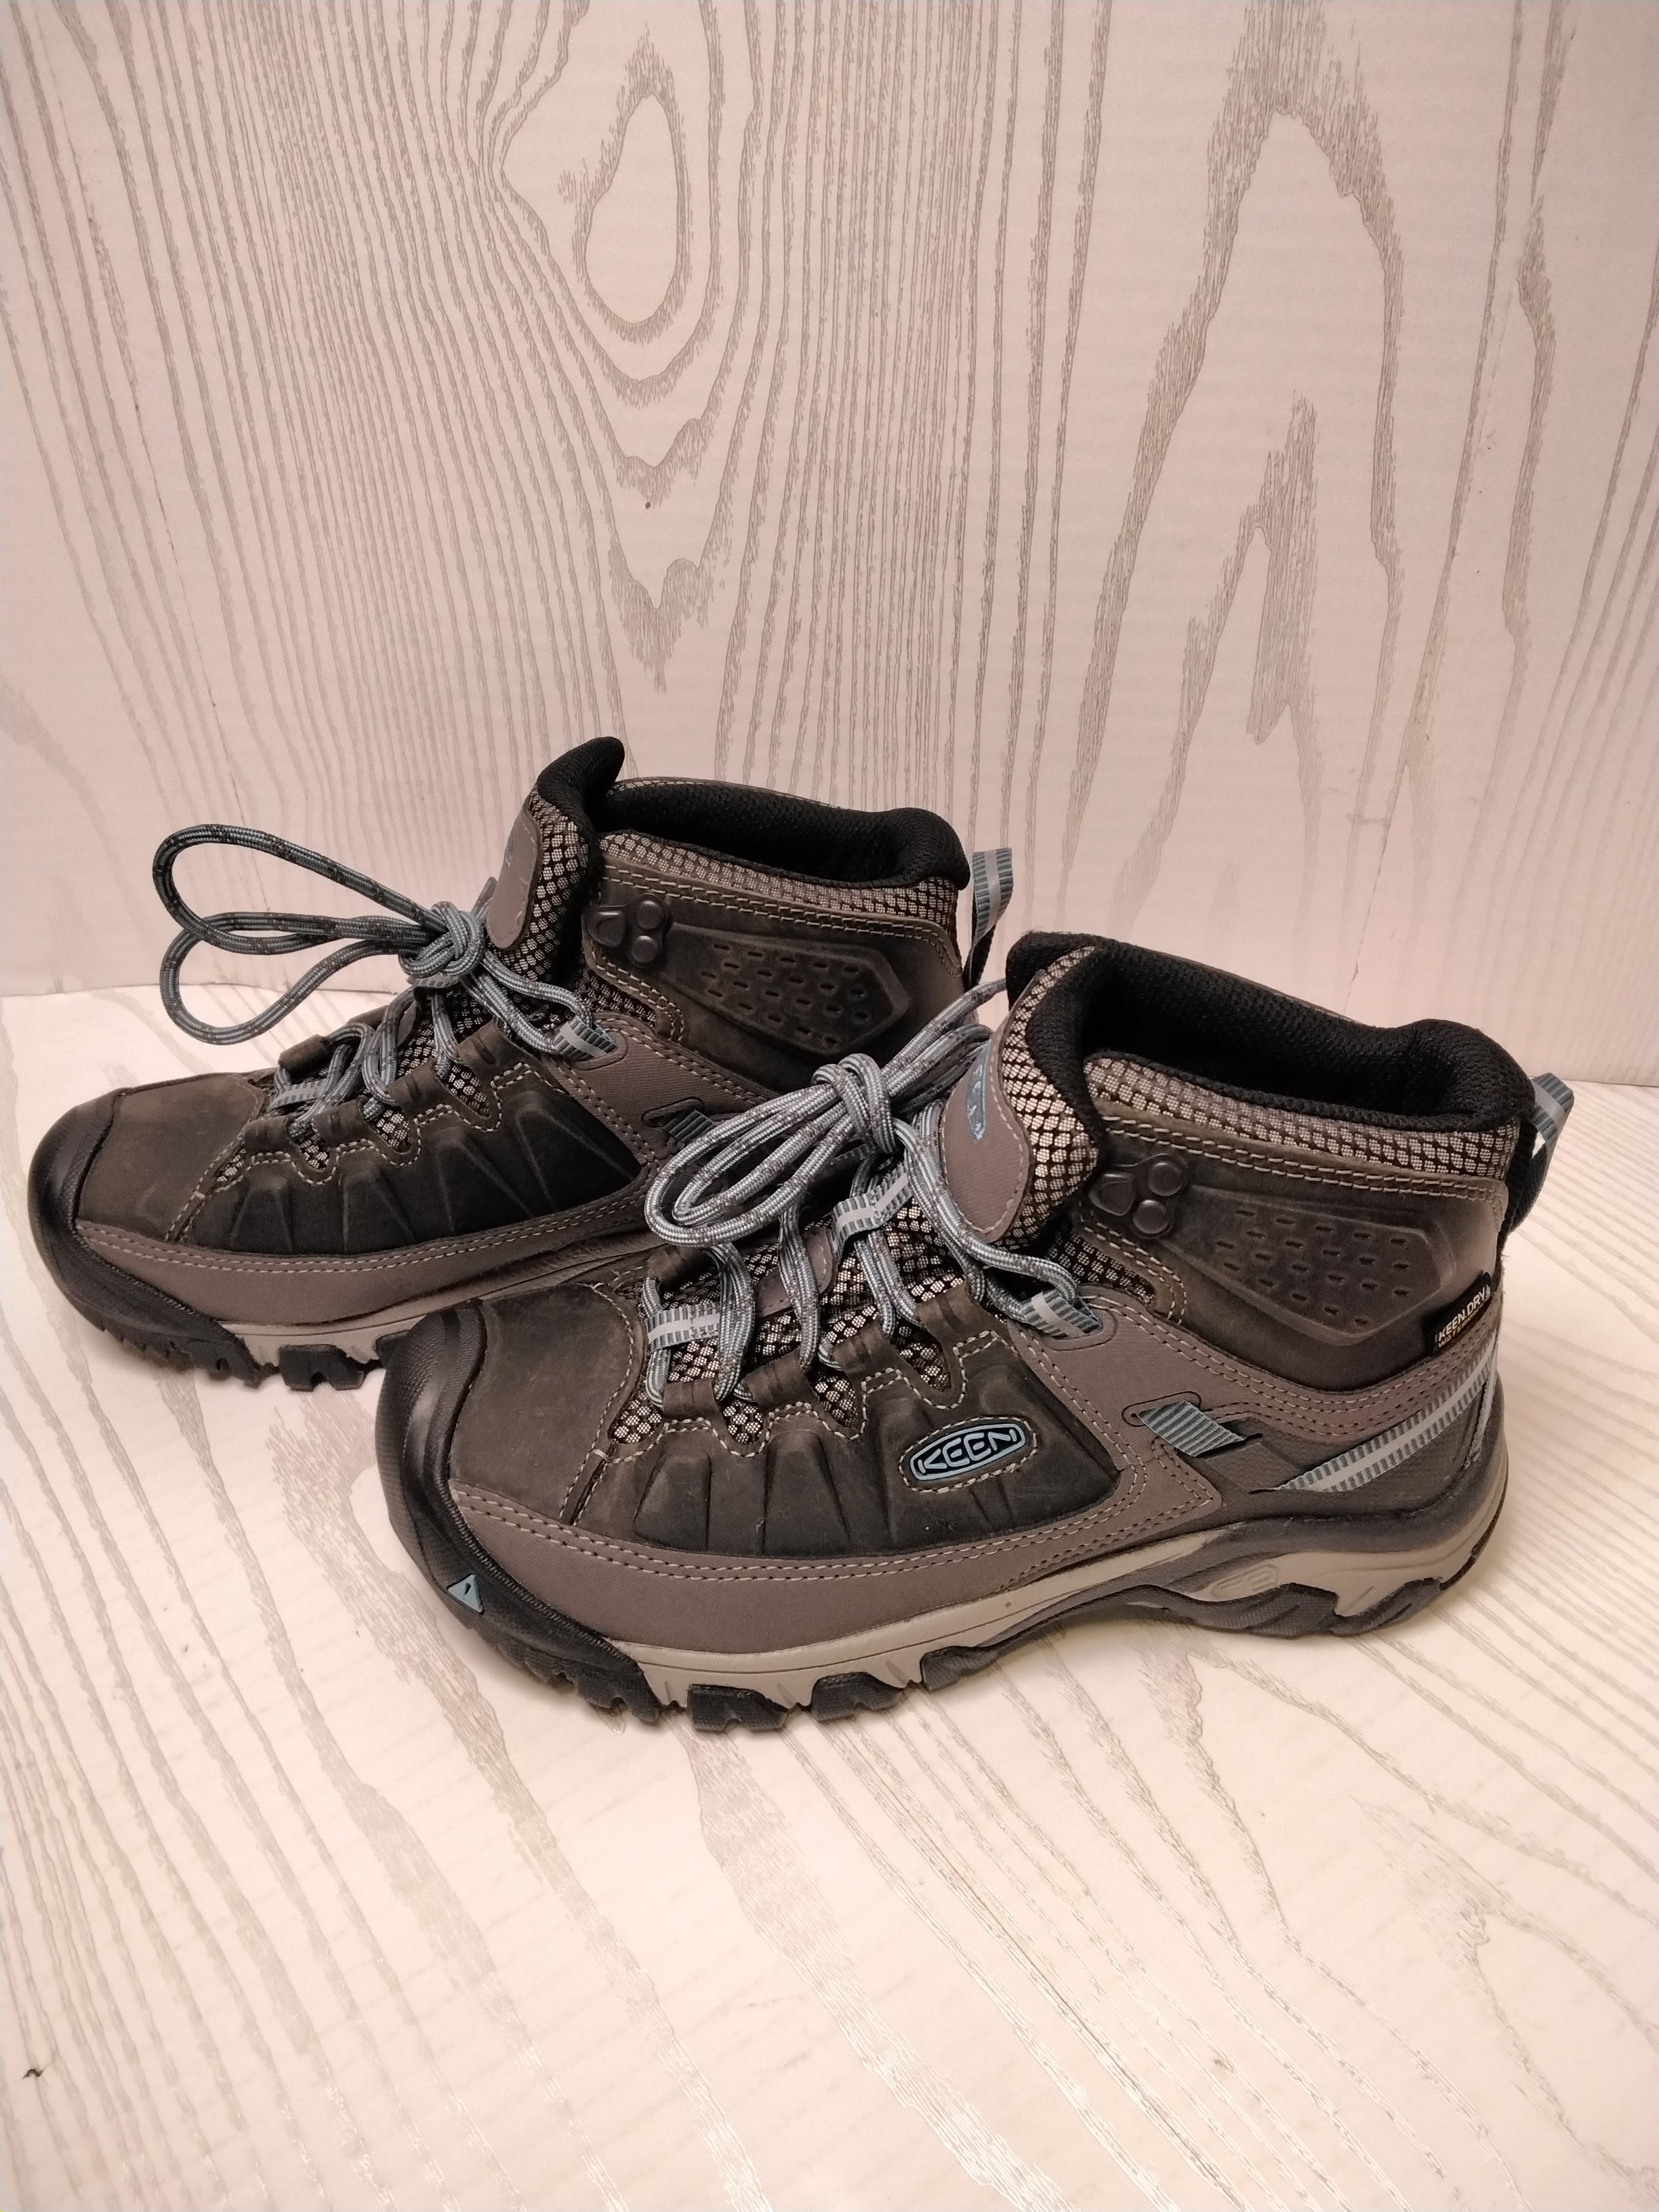 KEEN Women's Targhee 3 Mid Waterproof Hiking Boot, Size 6.5 (7774364172526)